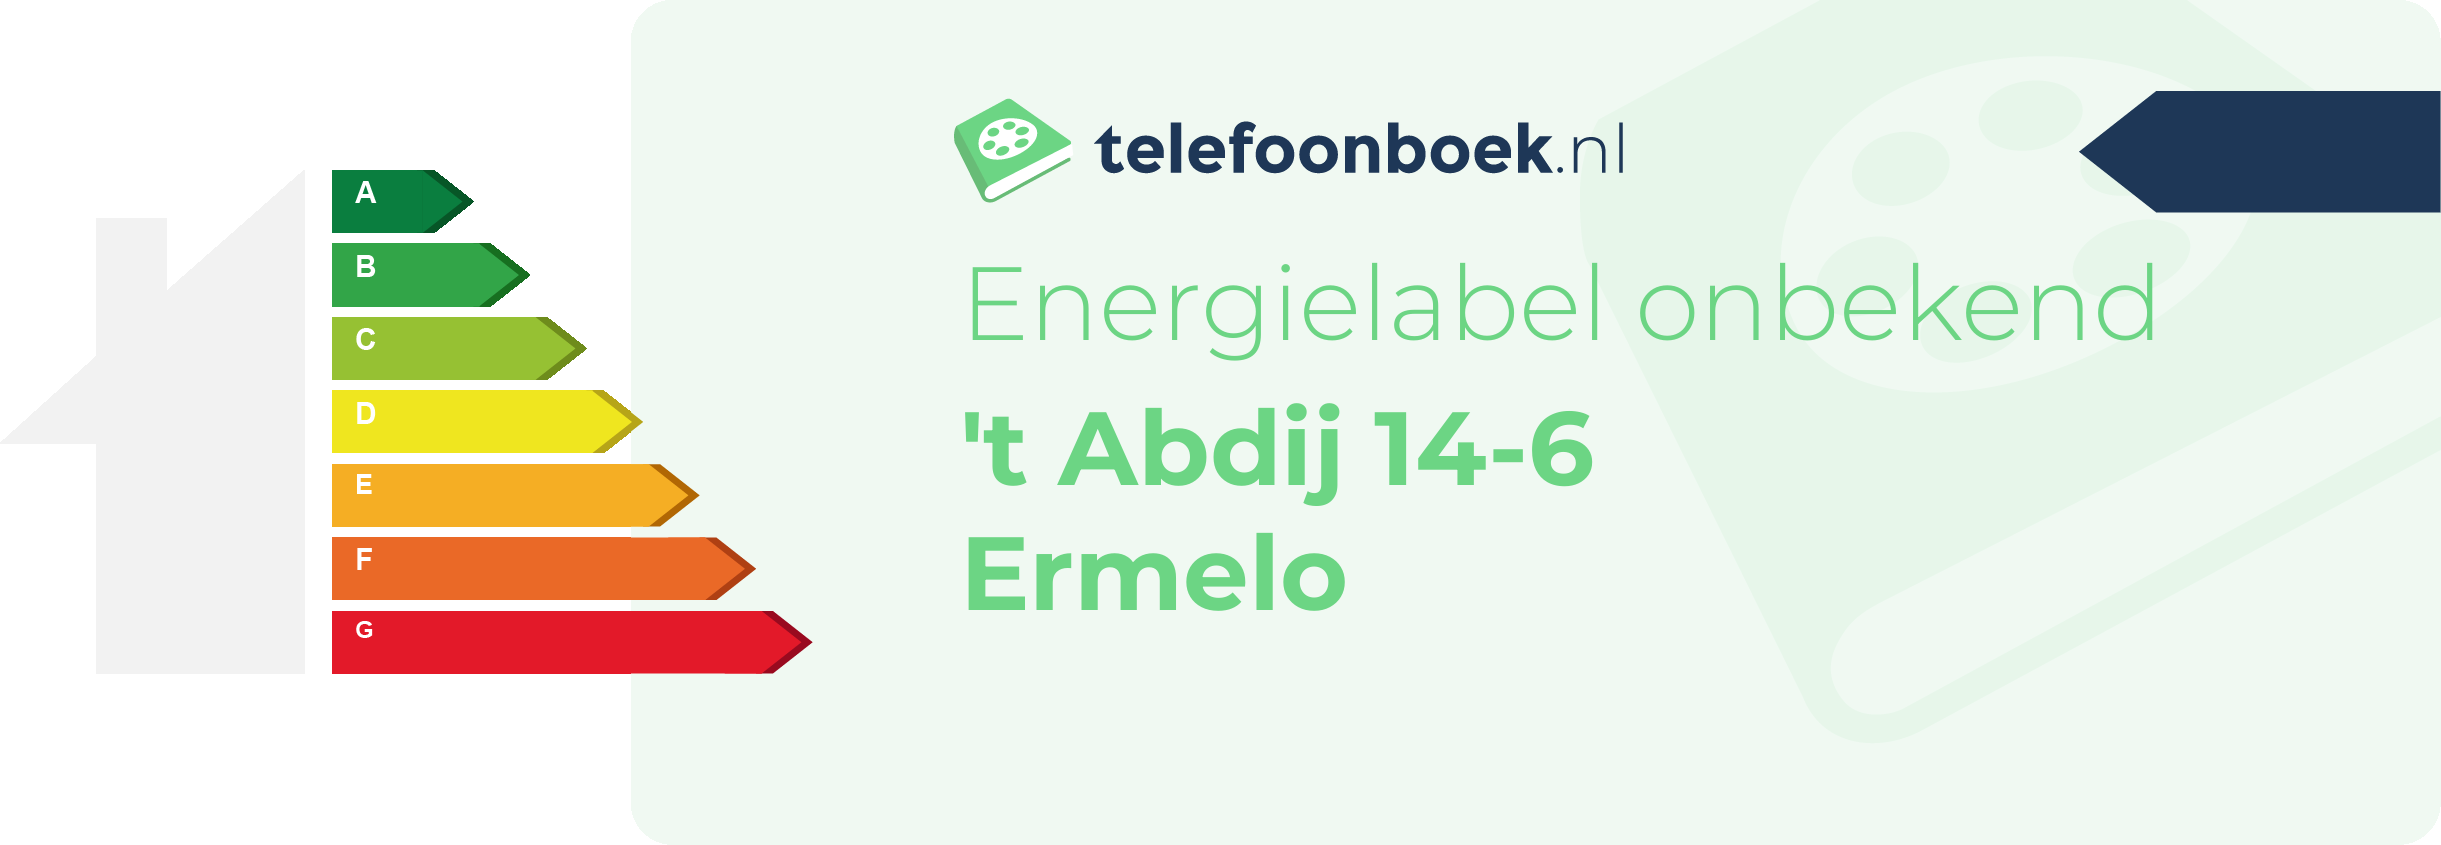 Energielabel 't Abdij 14-6 Ermelo